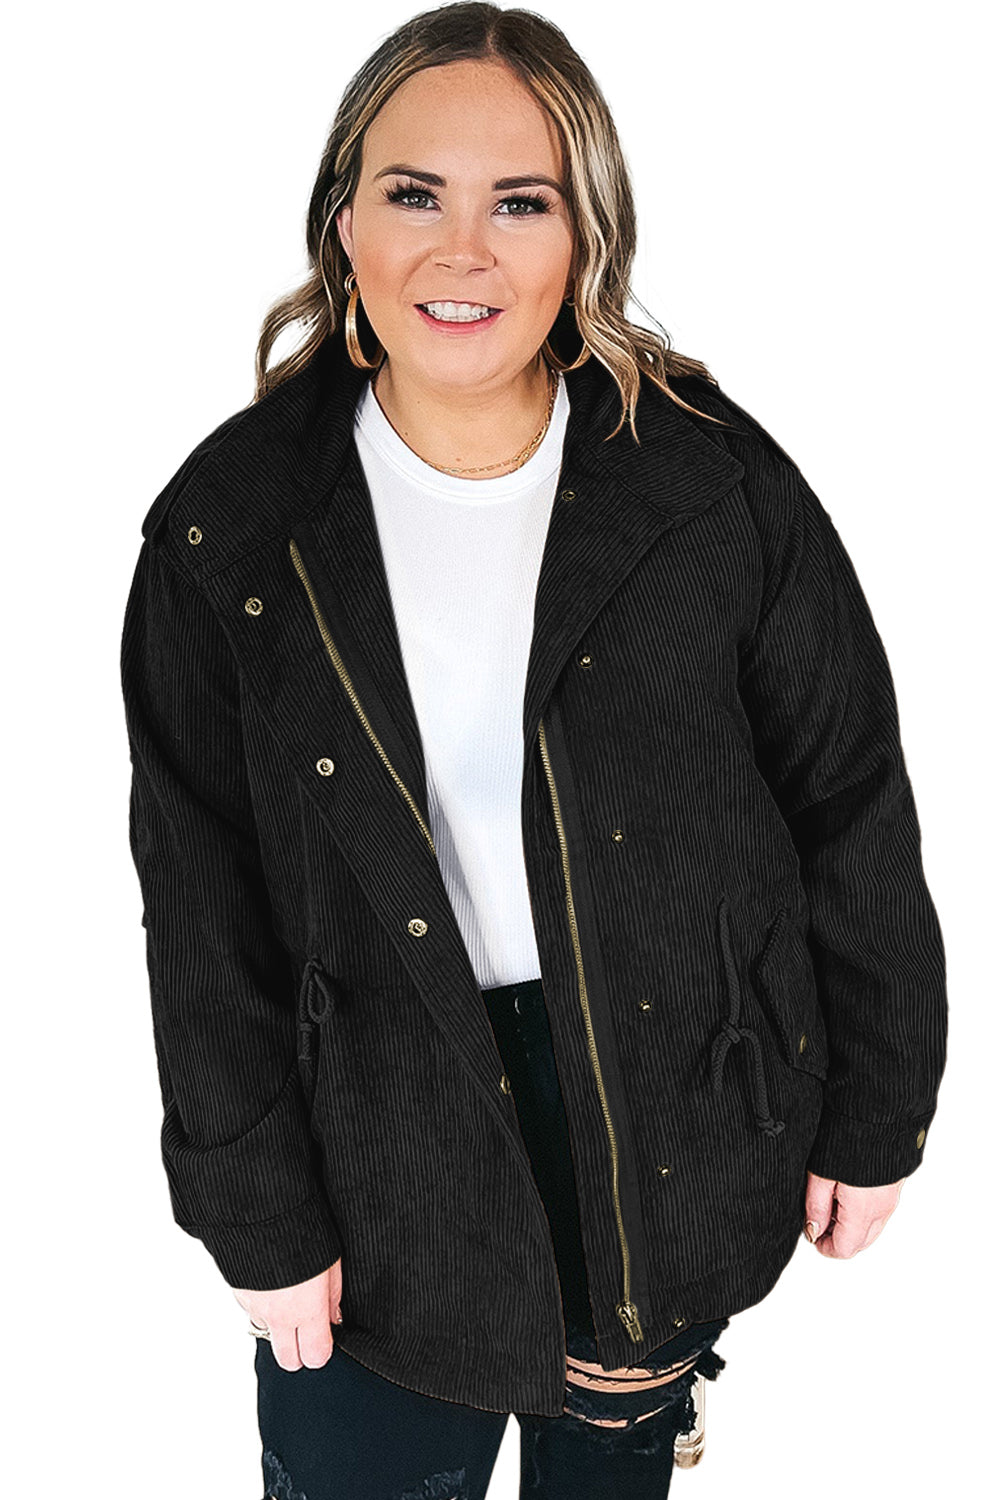 Voluptuous (+) Plus Size Button Zipped Corduroy Jacket - various colors - women's jacket at TFC&H Co.